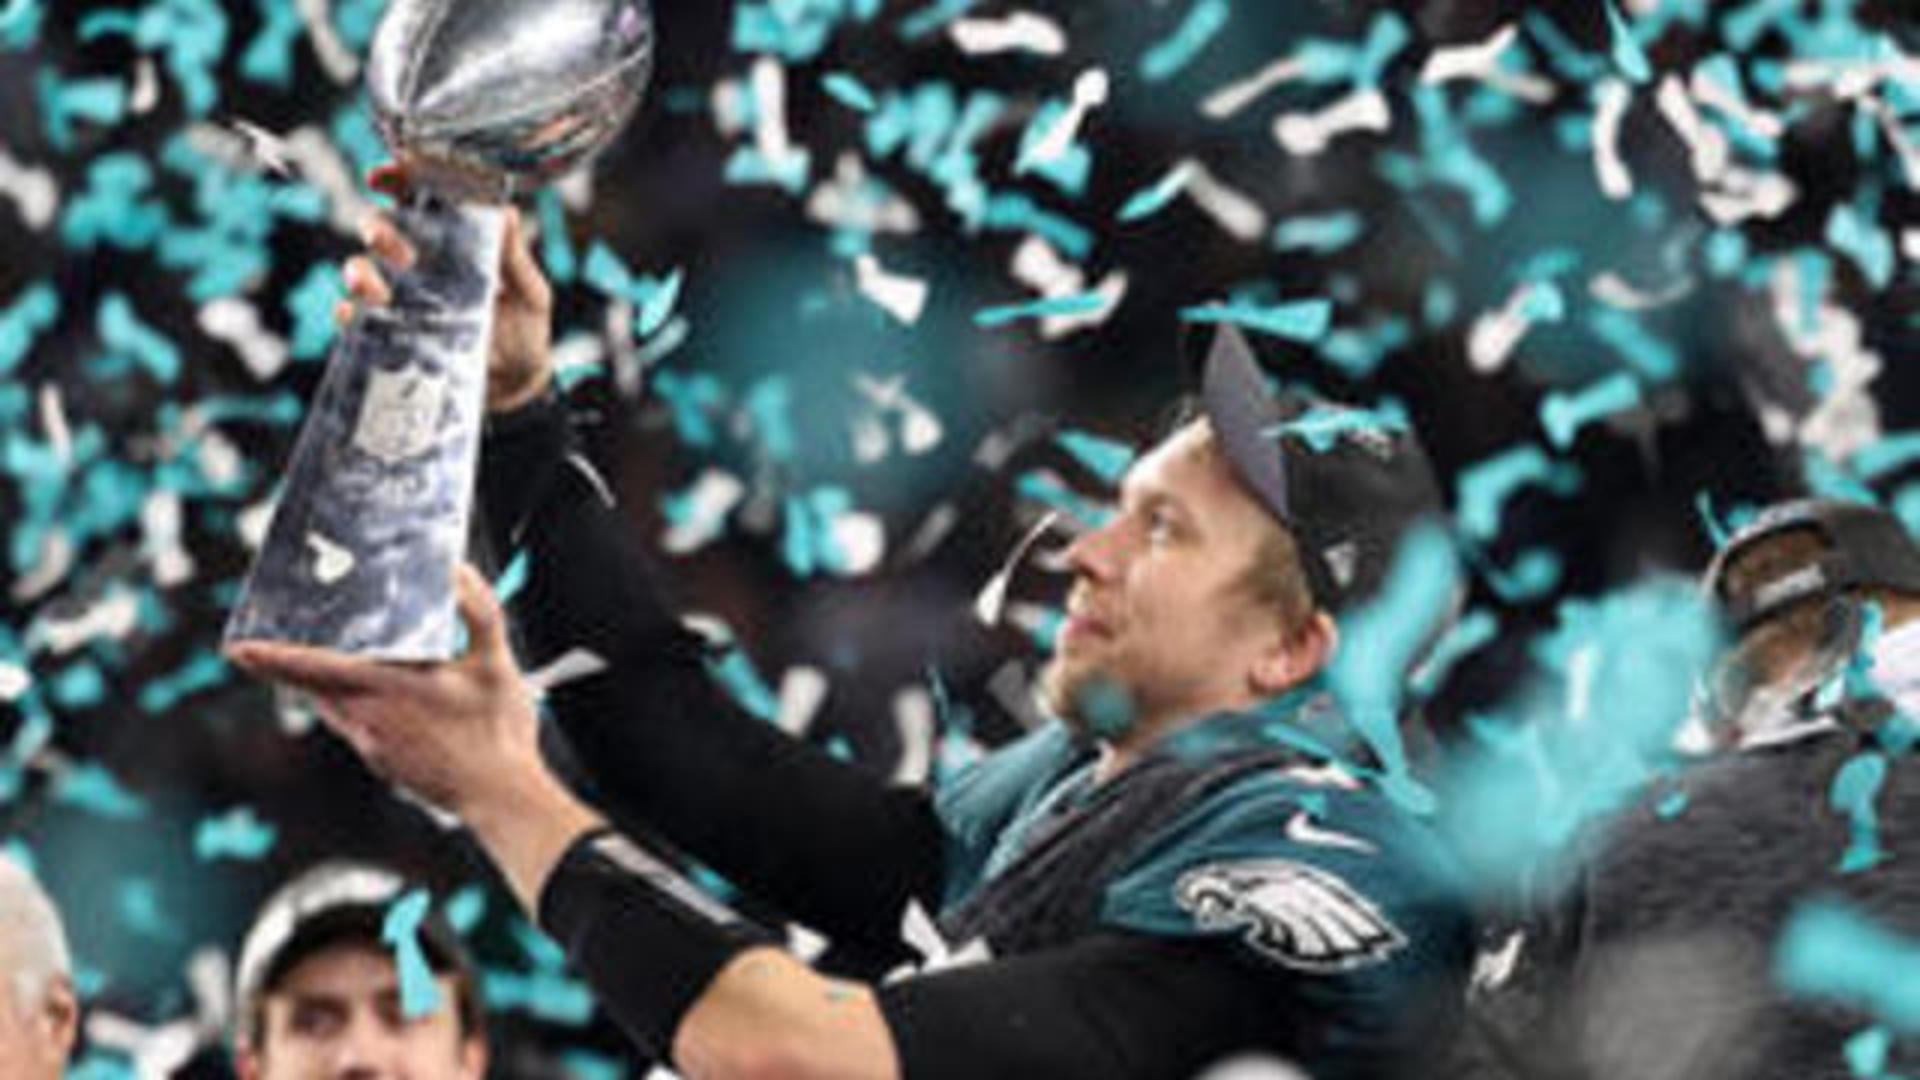 Eagles win Super Bowl, top Patriots 41-33 - CBS News